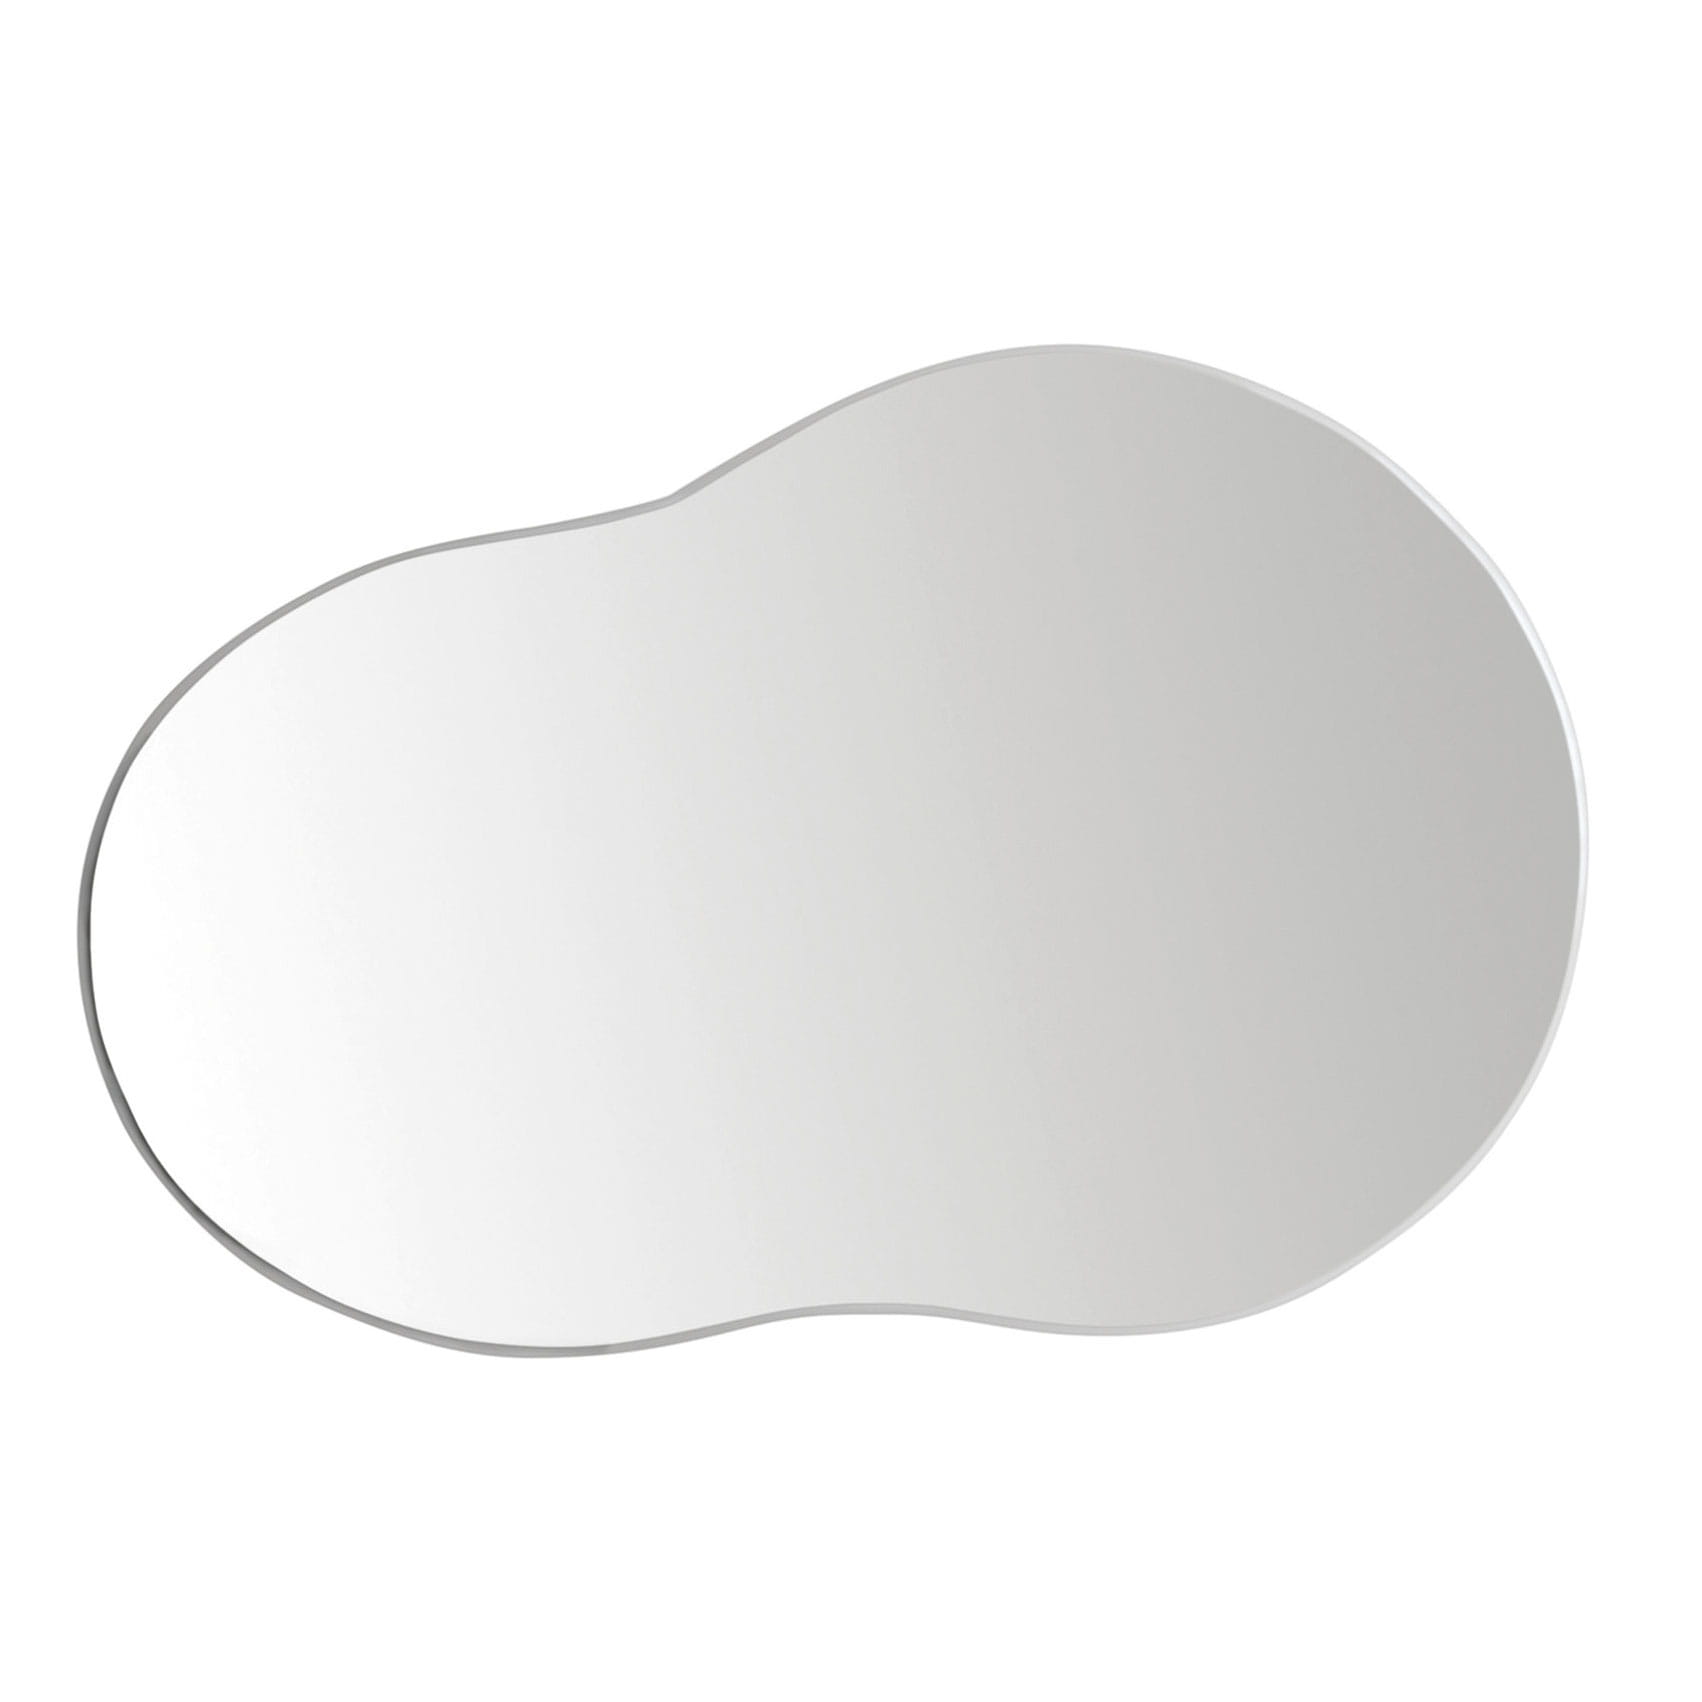 Ergotec Ersatz-Spiegelglas für M-99 / M-99L 05376000